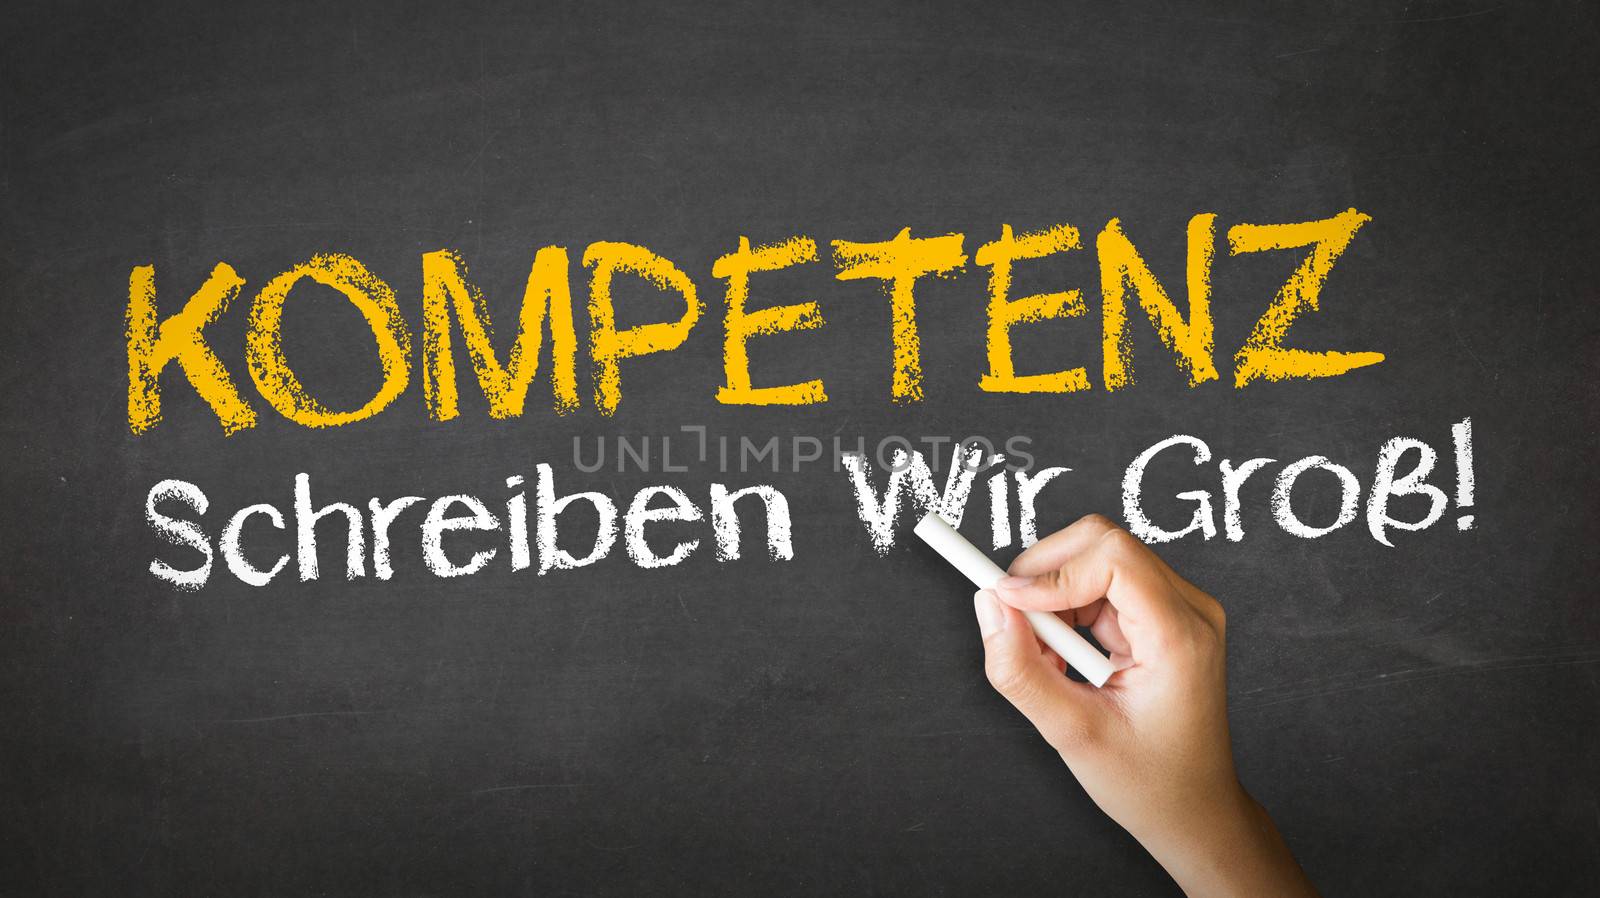 Competence Slogan (In German) by kbuntu